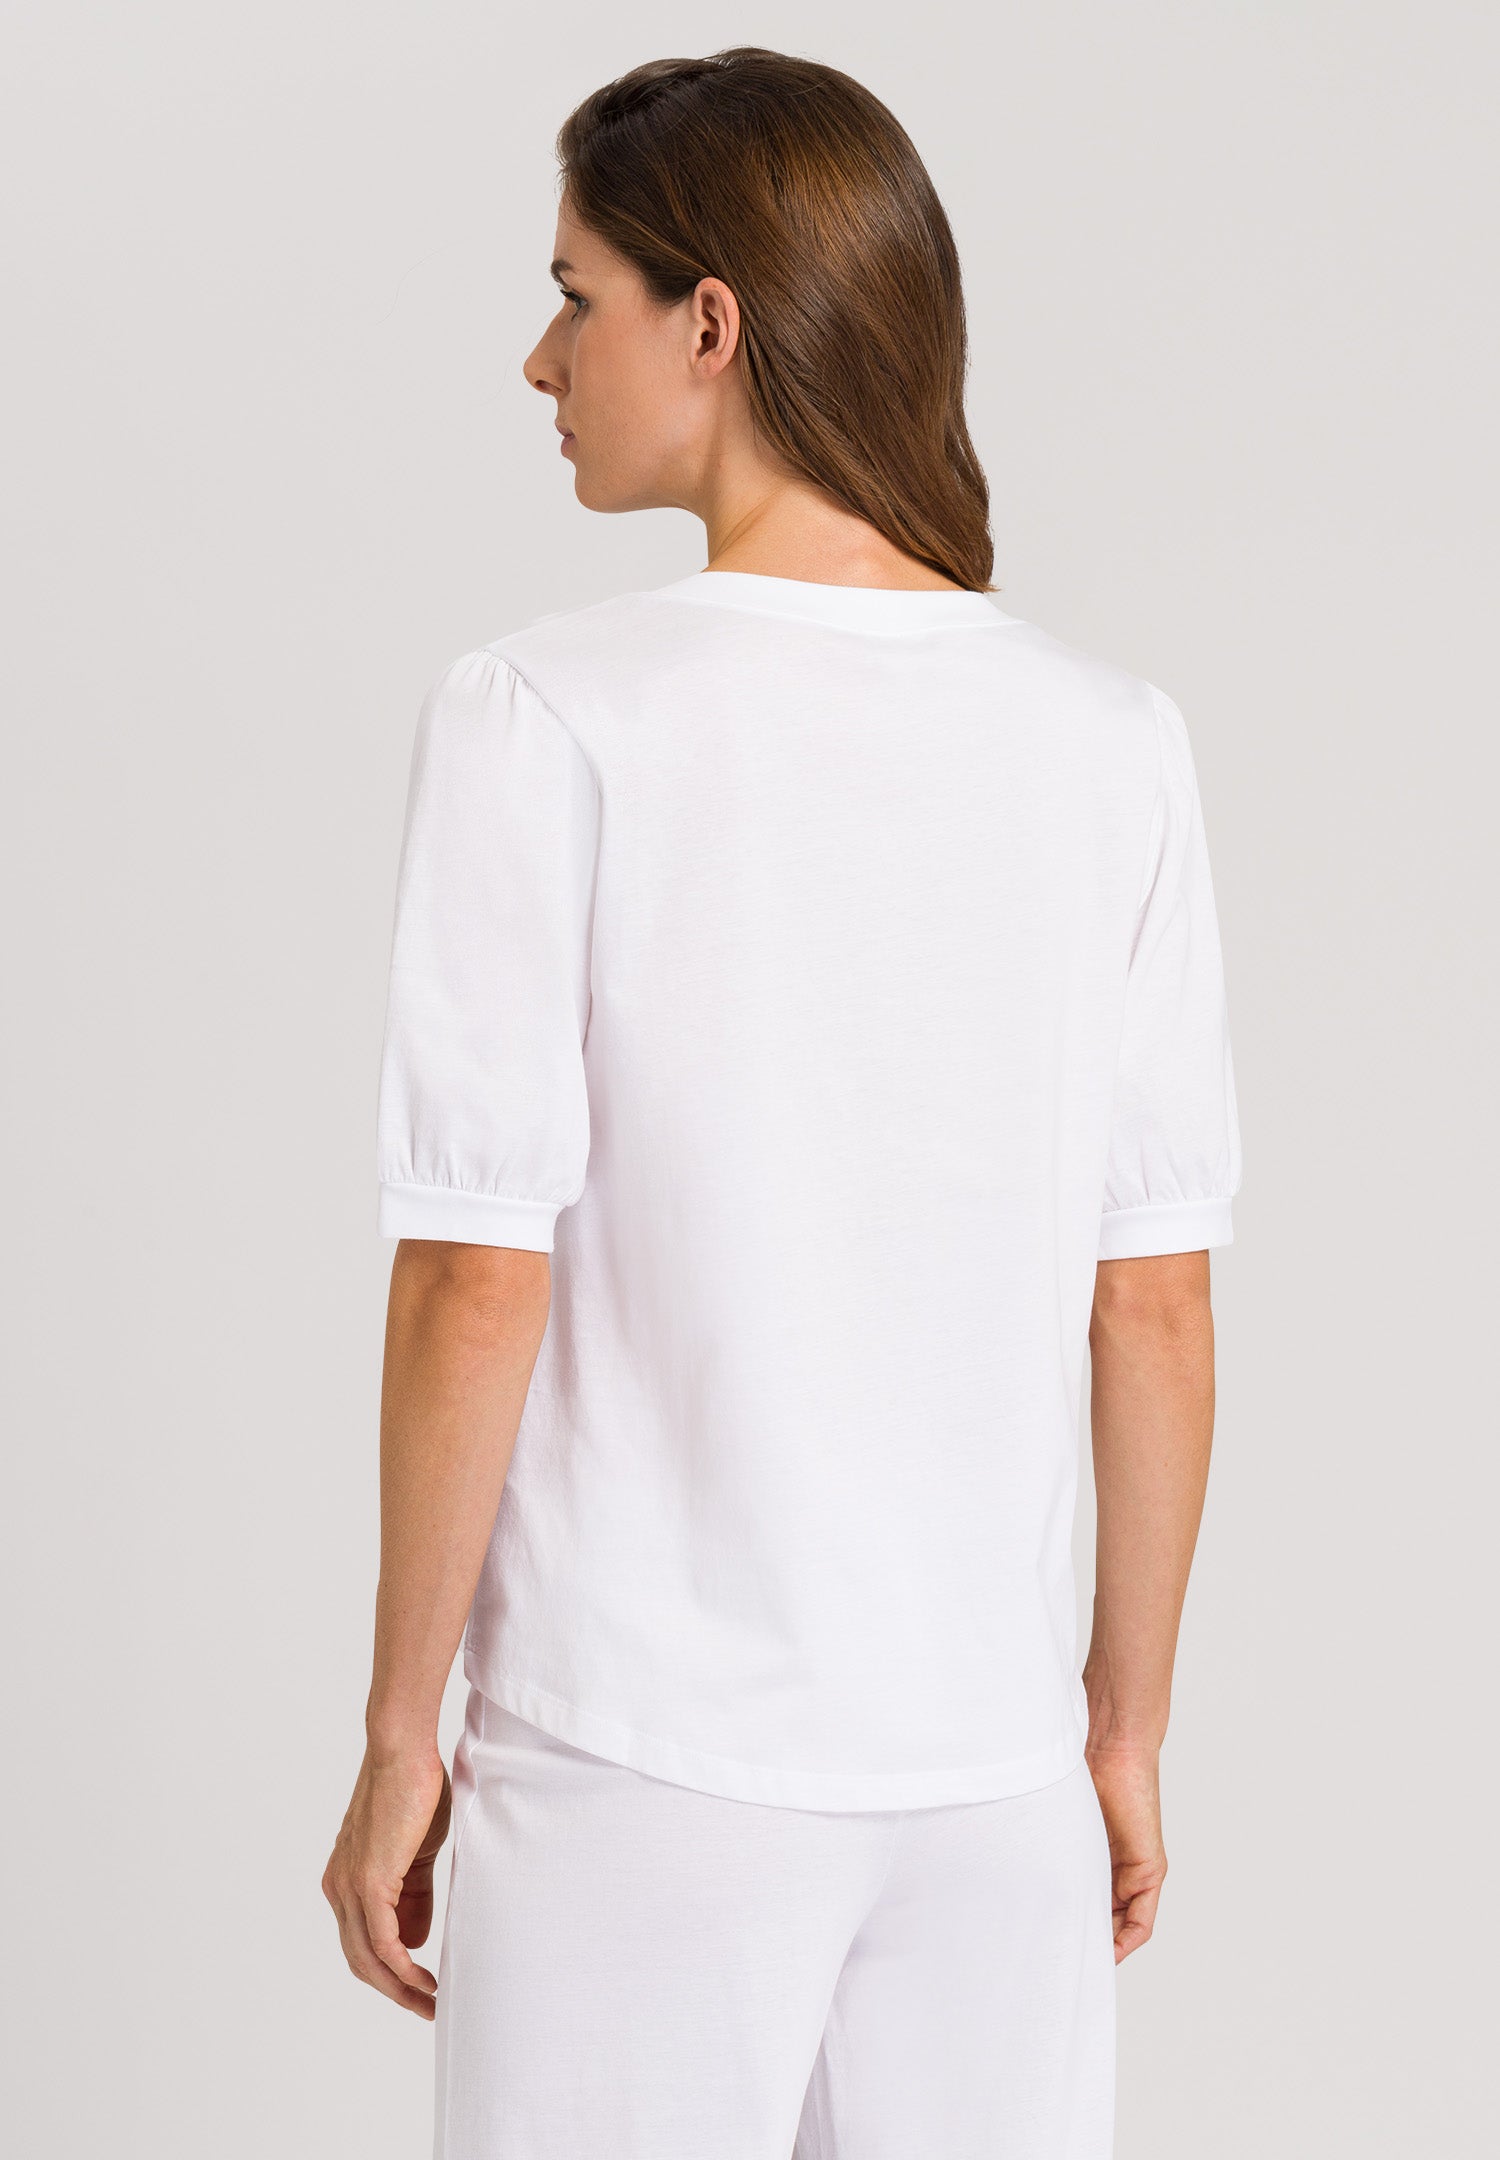 78741 Natural Shirt Short Sleeve Shirt - 101 White